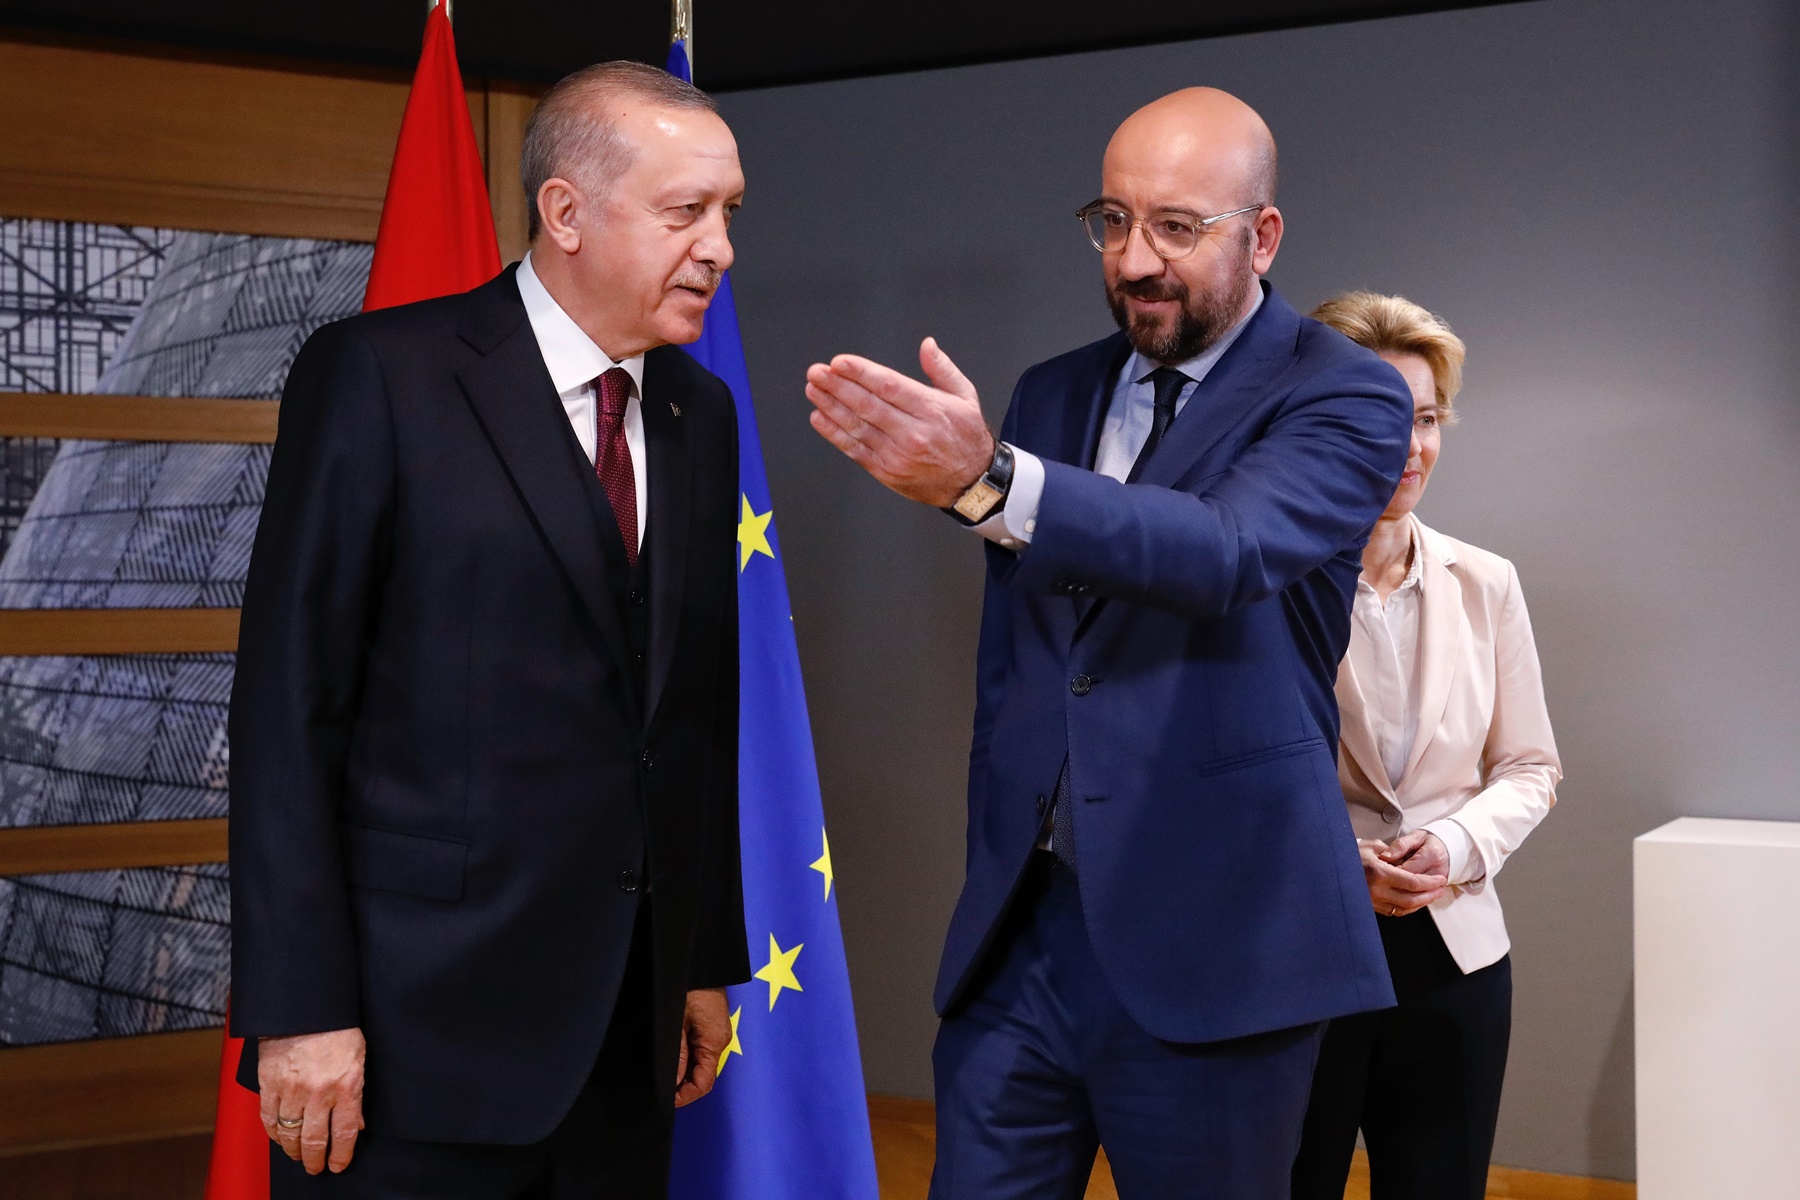 Κυρώσεις ΕΕ σε Τουρκία: Παγώνουν τα σχέδια λόγω «βελτίωσης κλίματος»